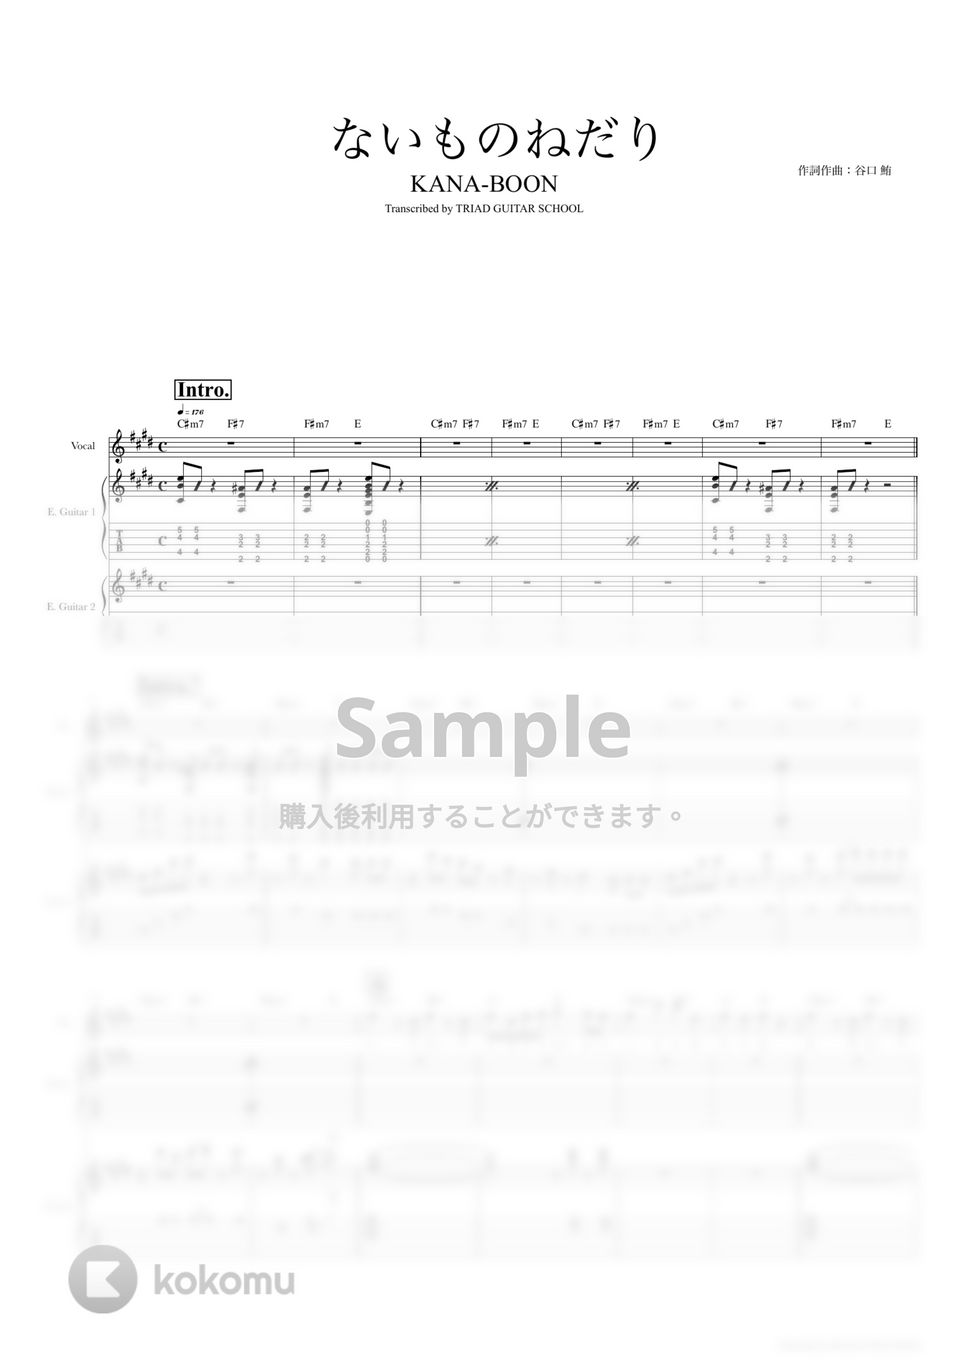 KANA-BOON - ないものねだり (ギタースコア・歌詞・コード付き) by TRIAD GUITAR SCHOOL